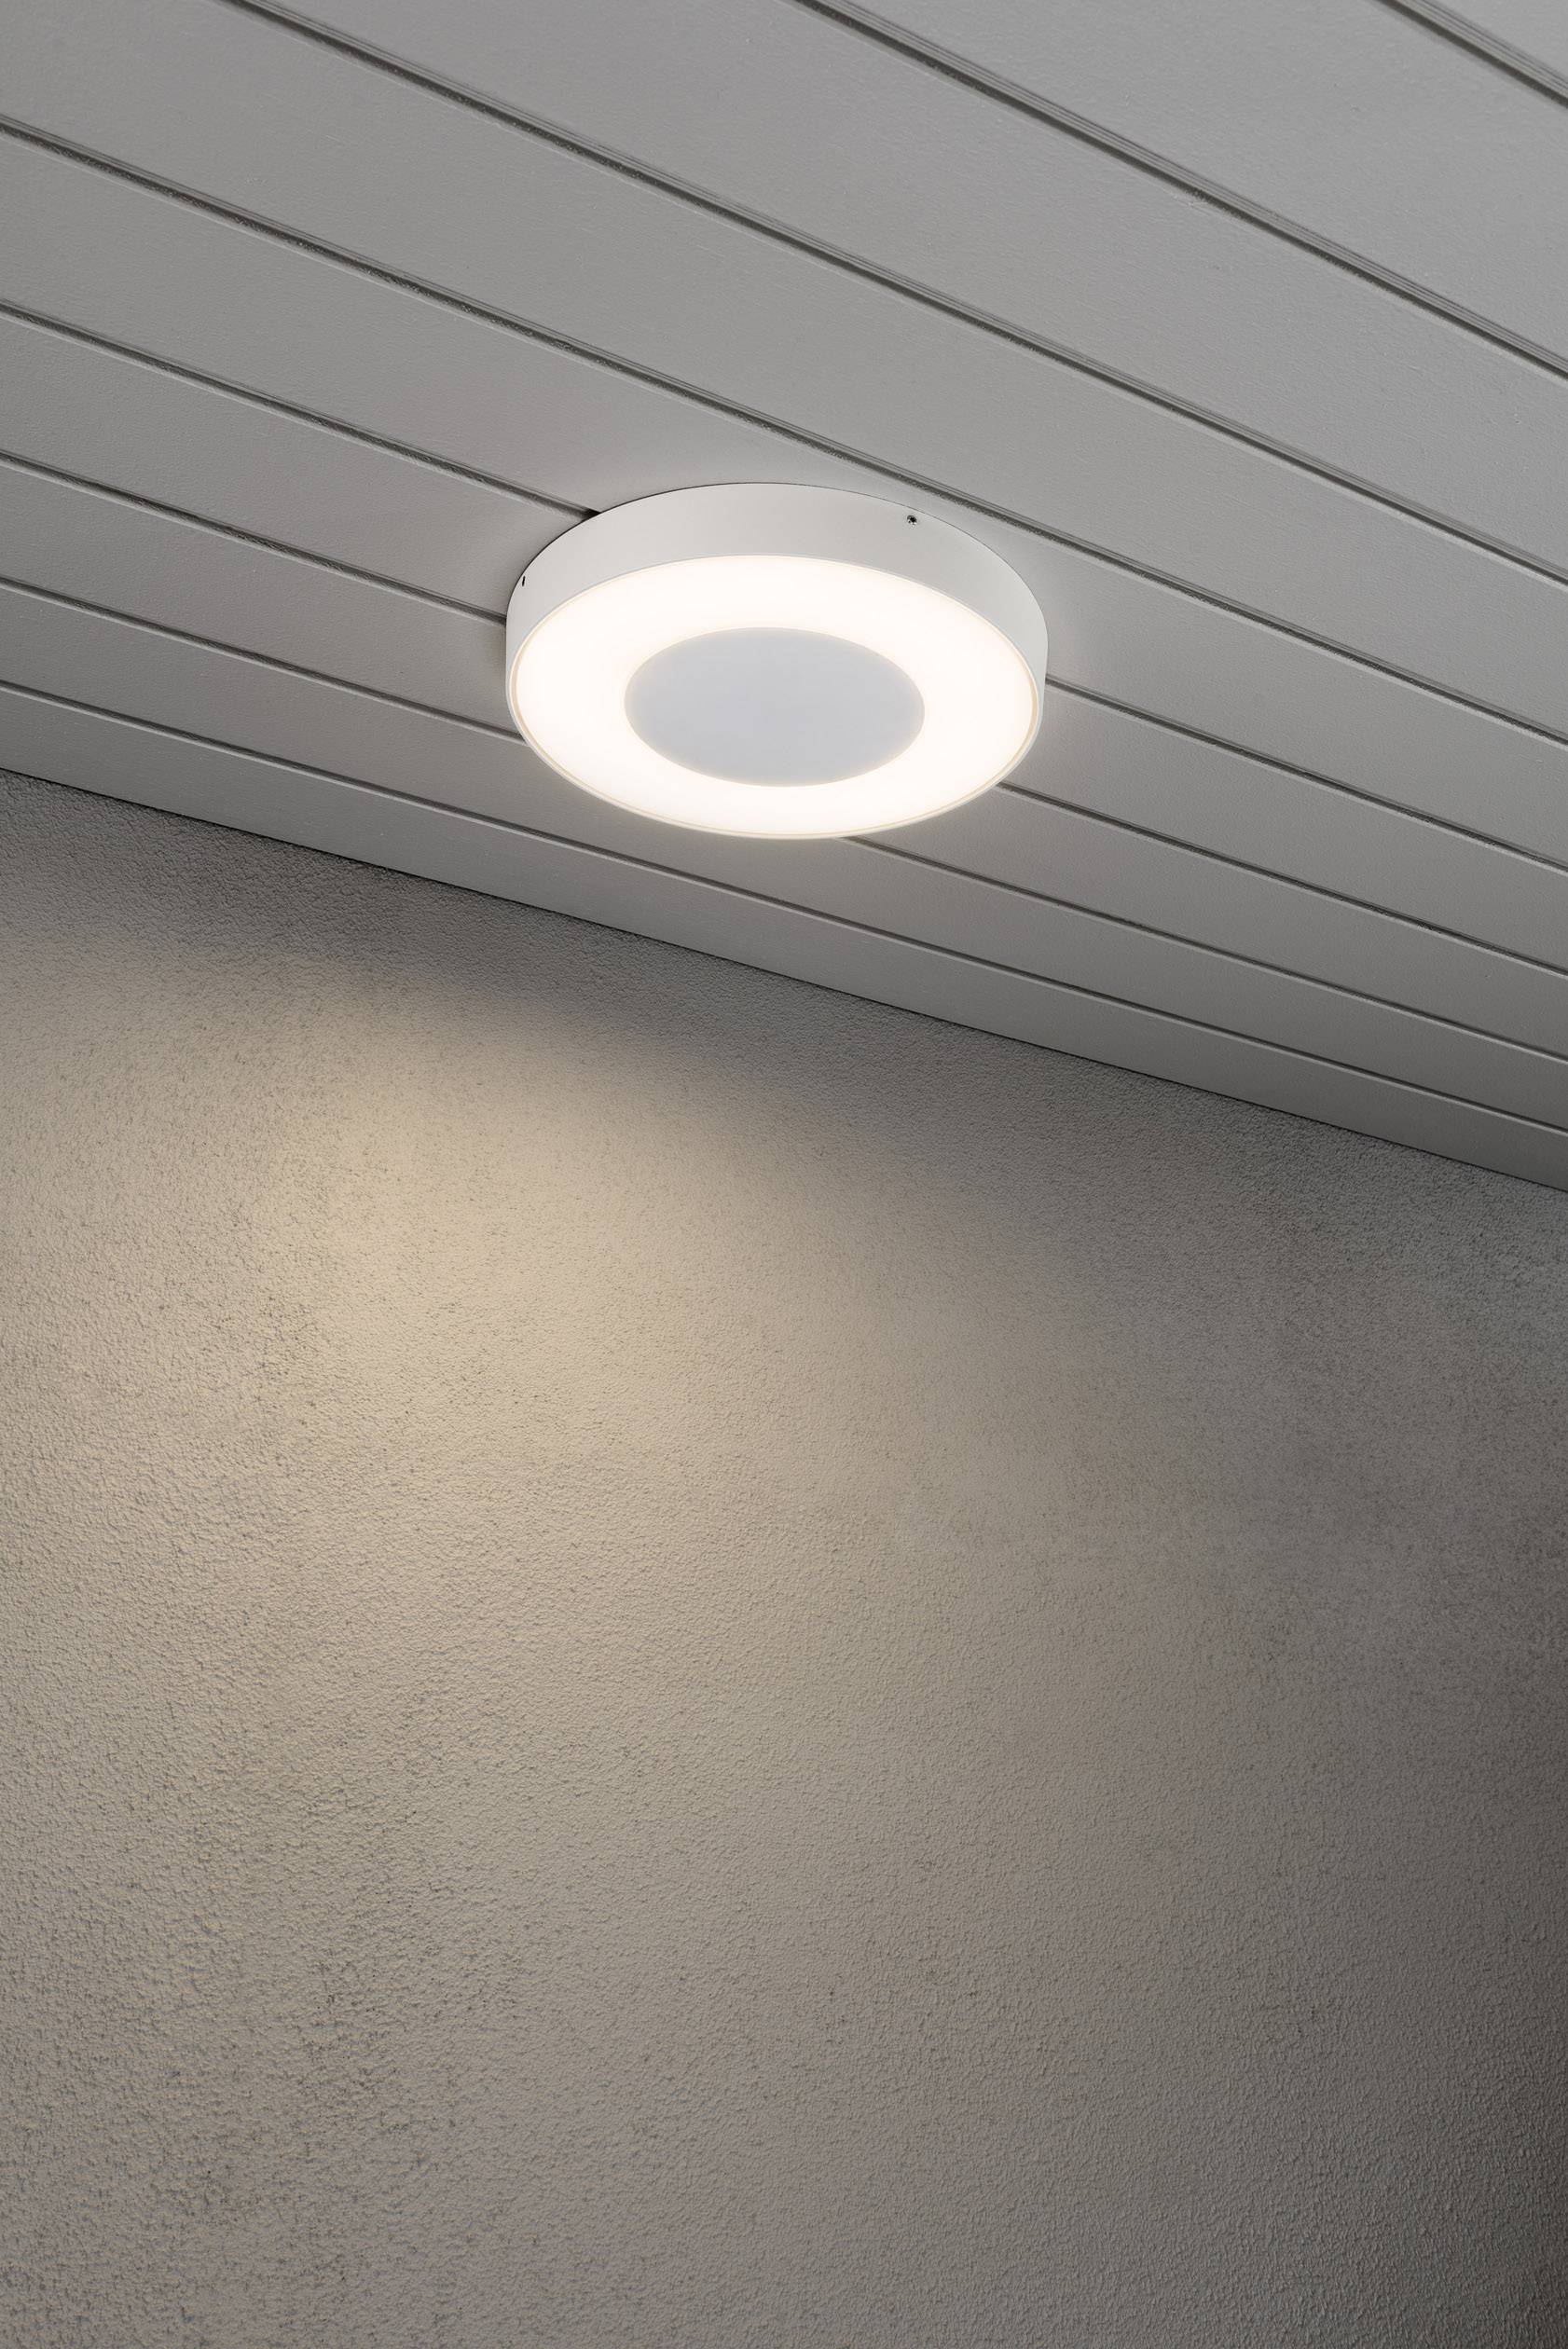 KONSTSMIDE LED-Außenwandleuchte 25 W Warm-Weiß, Neutral-Weiß, Tageslicht-Weiß Konstsmide Carrara 798